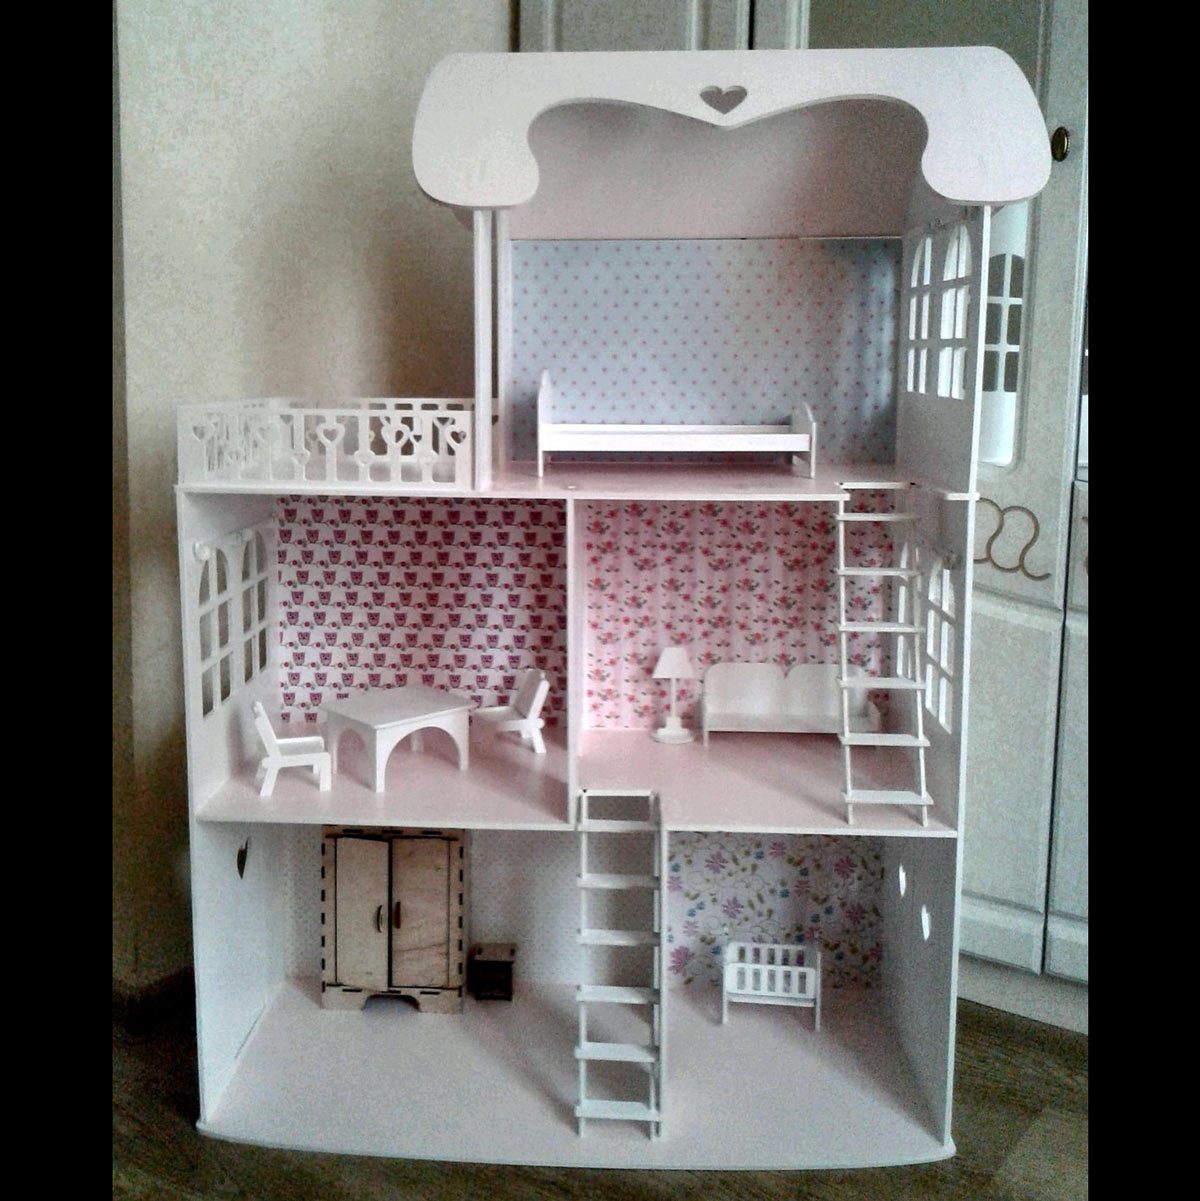 Røg Det er billigt niece 10 Homemade Barbie Houses You Wish You Lived In | Family Handyman